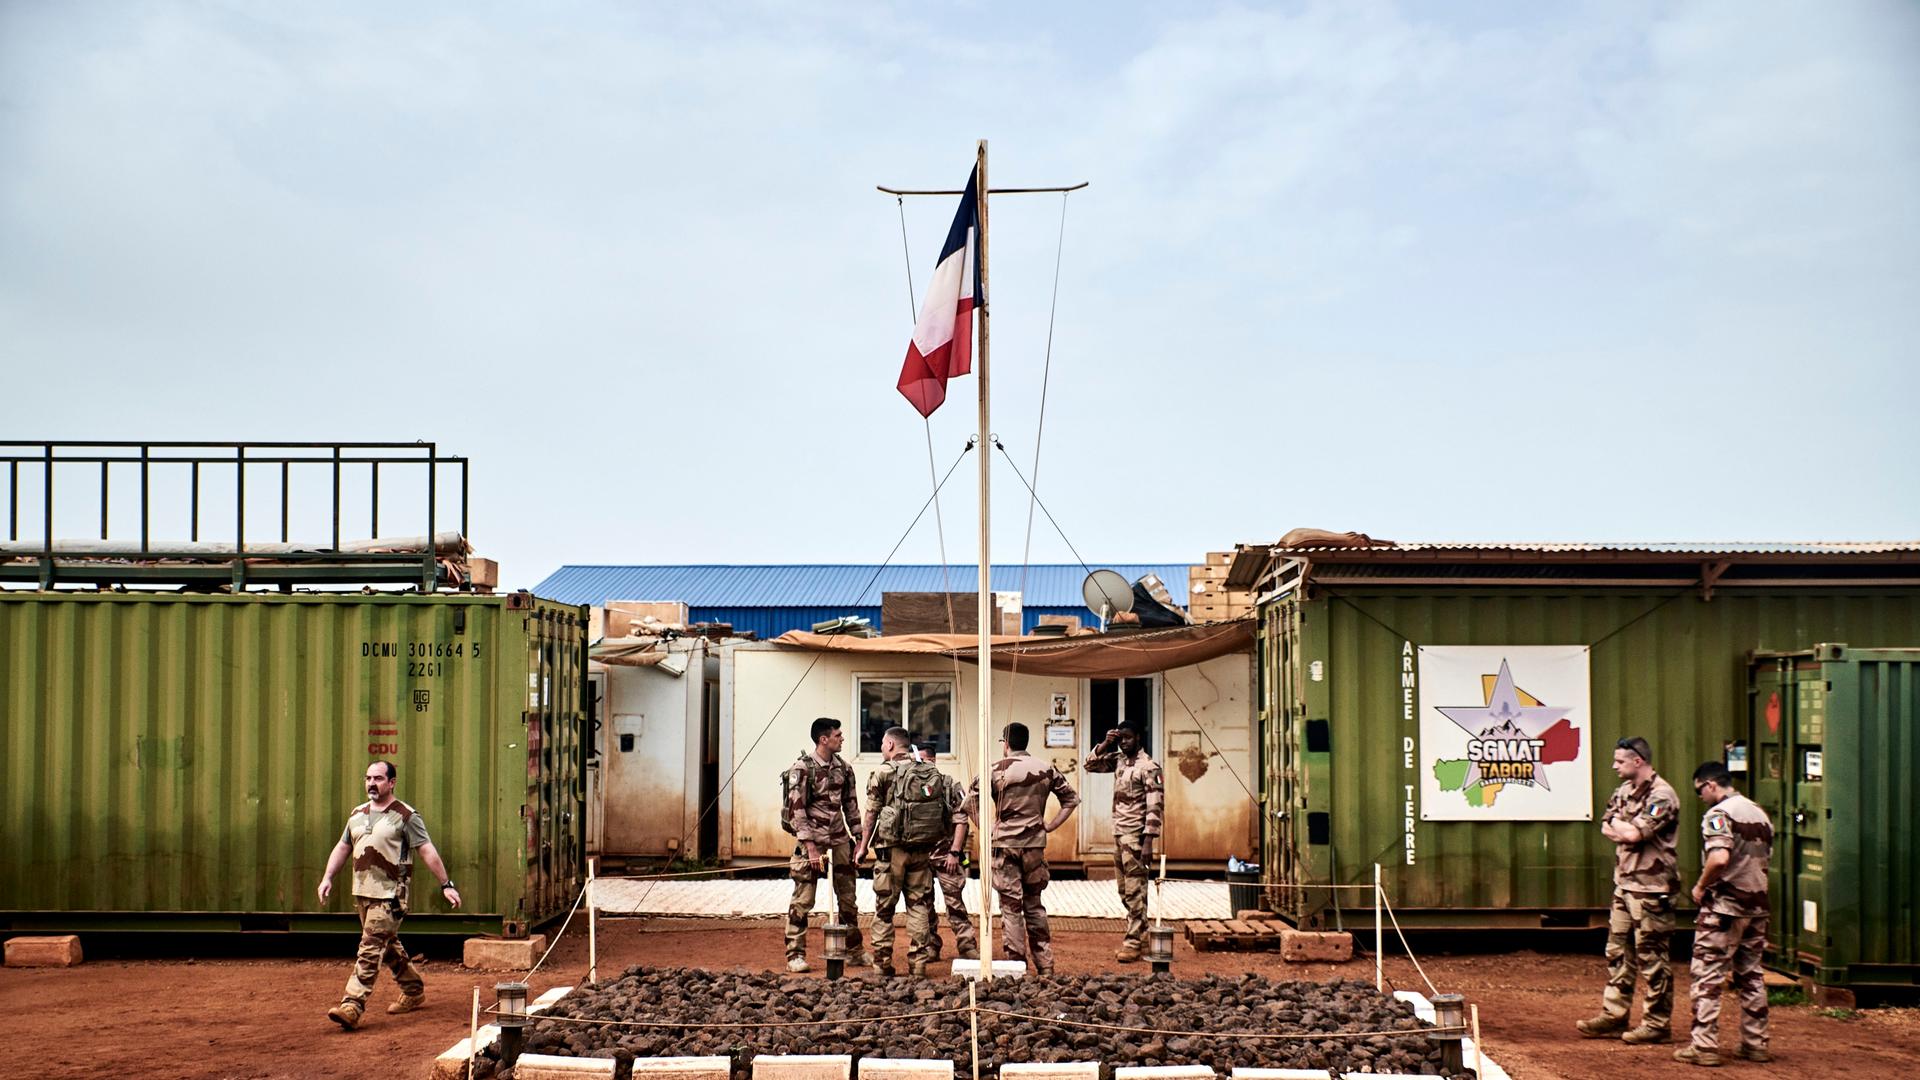 Â©Antonin Burat / Le Pictorium/MAXPPP - Gao 06/09/2021 Antonin Burat / Le Pictorium - 6/9/2021 - Mali / Gao - Entree de la zone dediee a la logistique et a la maintenance de la base militaire de Gao, principale emprise de l'armee francaise au Mali. C'est ici que sont prepares les vehicules utilises pour les convois. / 6/9/2021 - Mali / Gao - Entrance to the area dedicated to logistics and maintenance at Gao military base, the French army's main outpost in Mali. This is where the vehicles used for convoys are prepared.